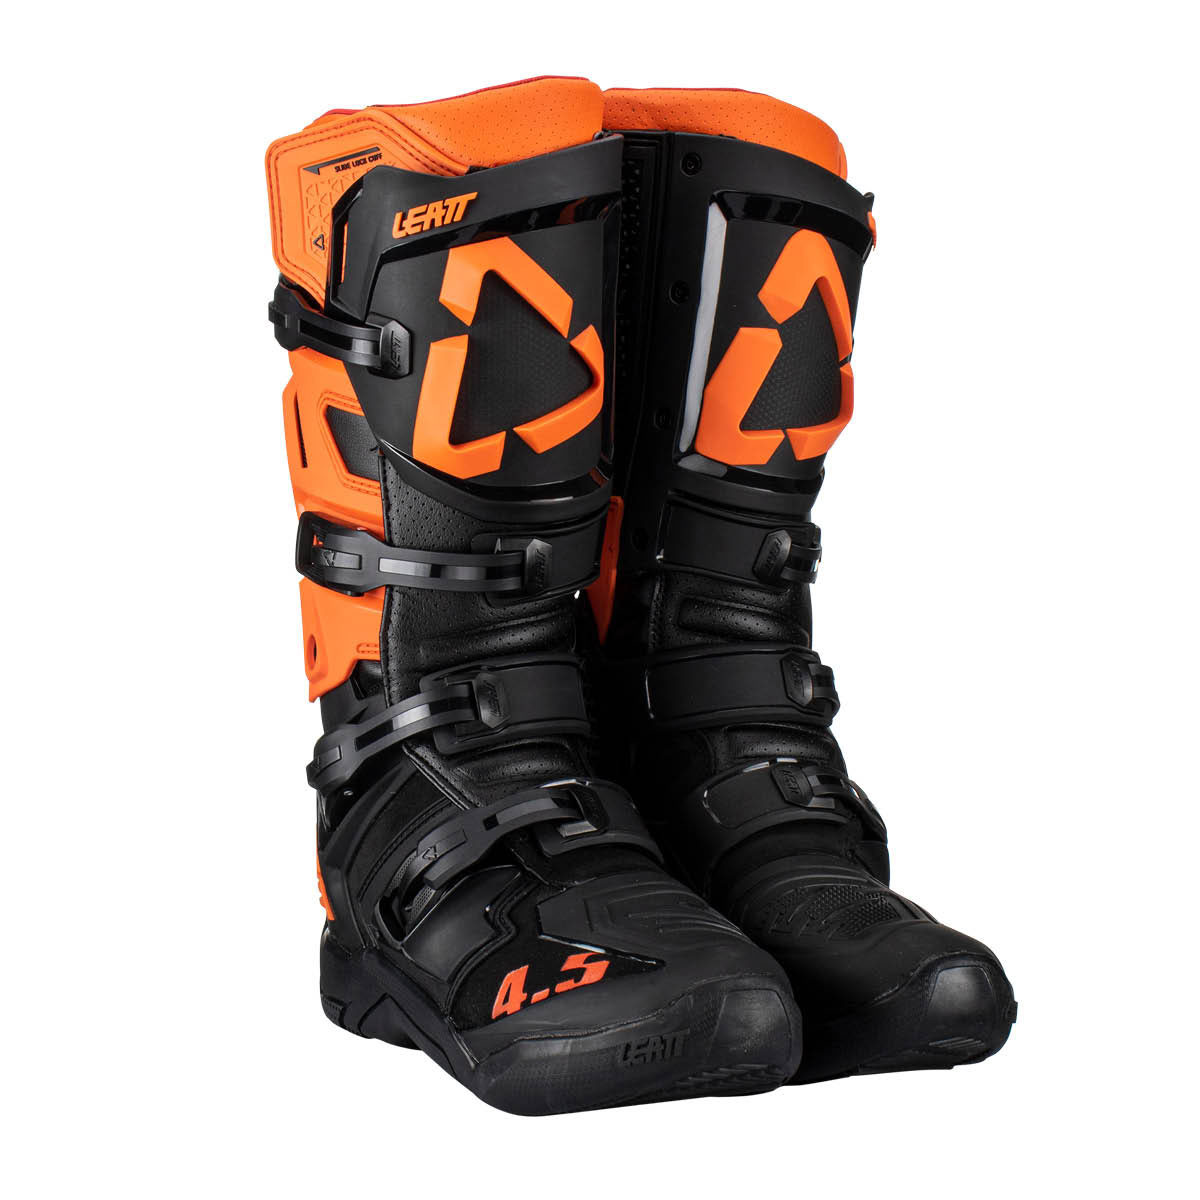 LEATT Motocross Stiefel 4.5, Orange